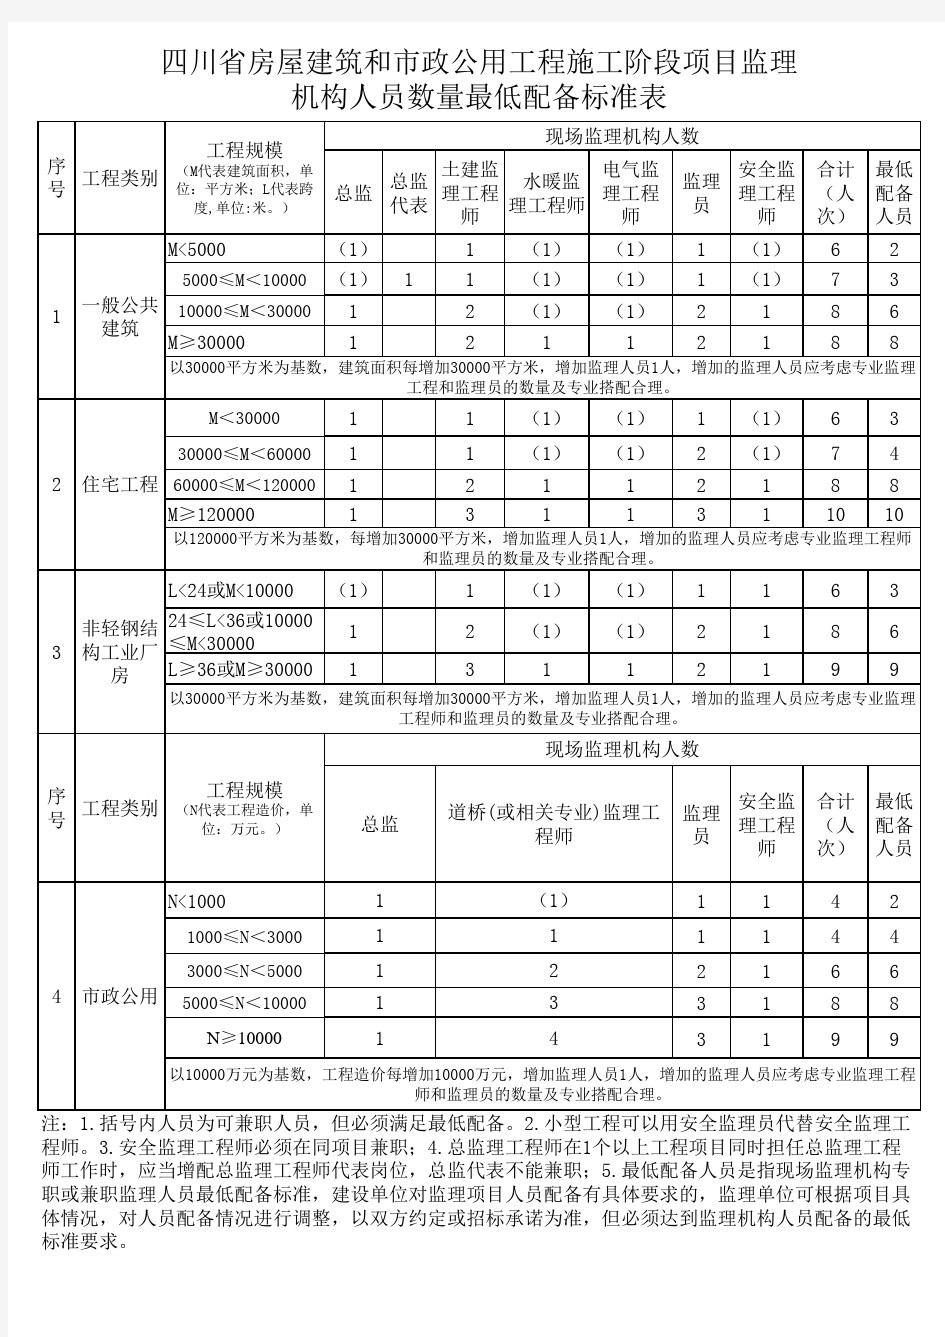 四川省房屋市政监理人员配备新规定